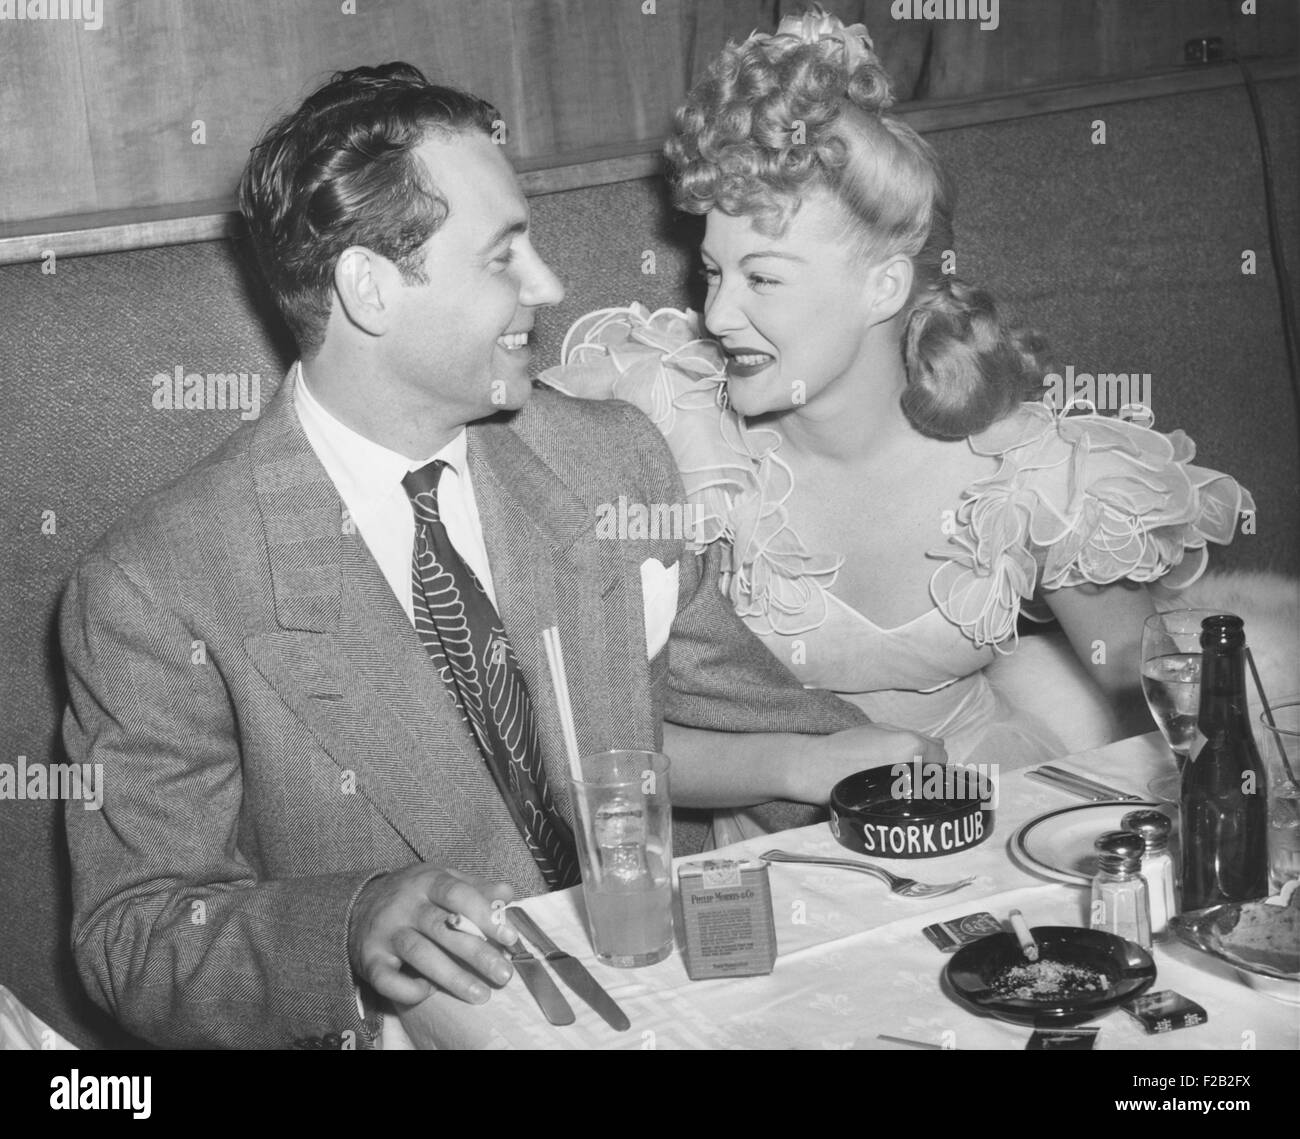 Movie star Betty Hutton avec son fiancé, journaliste, Charles Martin en stock au Club. La ville de New York, 2 septembre 1943. Ils n'ont jamais tue, au lieu de cela elle a épousé Ted Briskin sur Septembre 3, 1945. CSU (2015  7 356) Banque D'Images